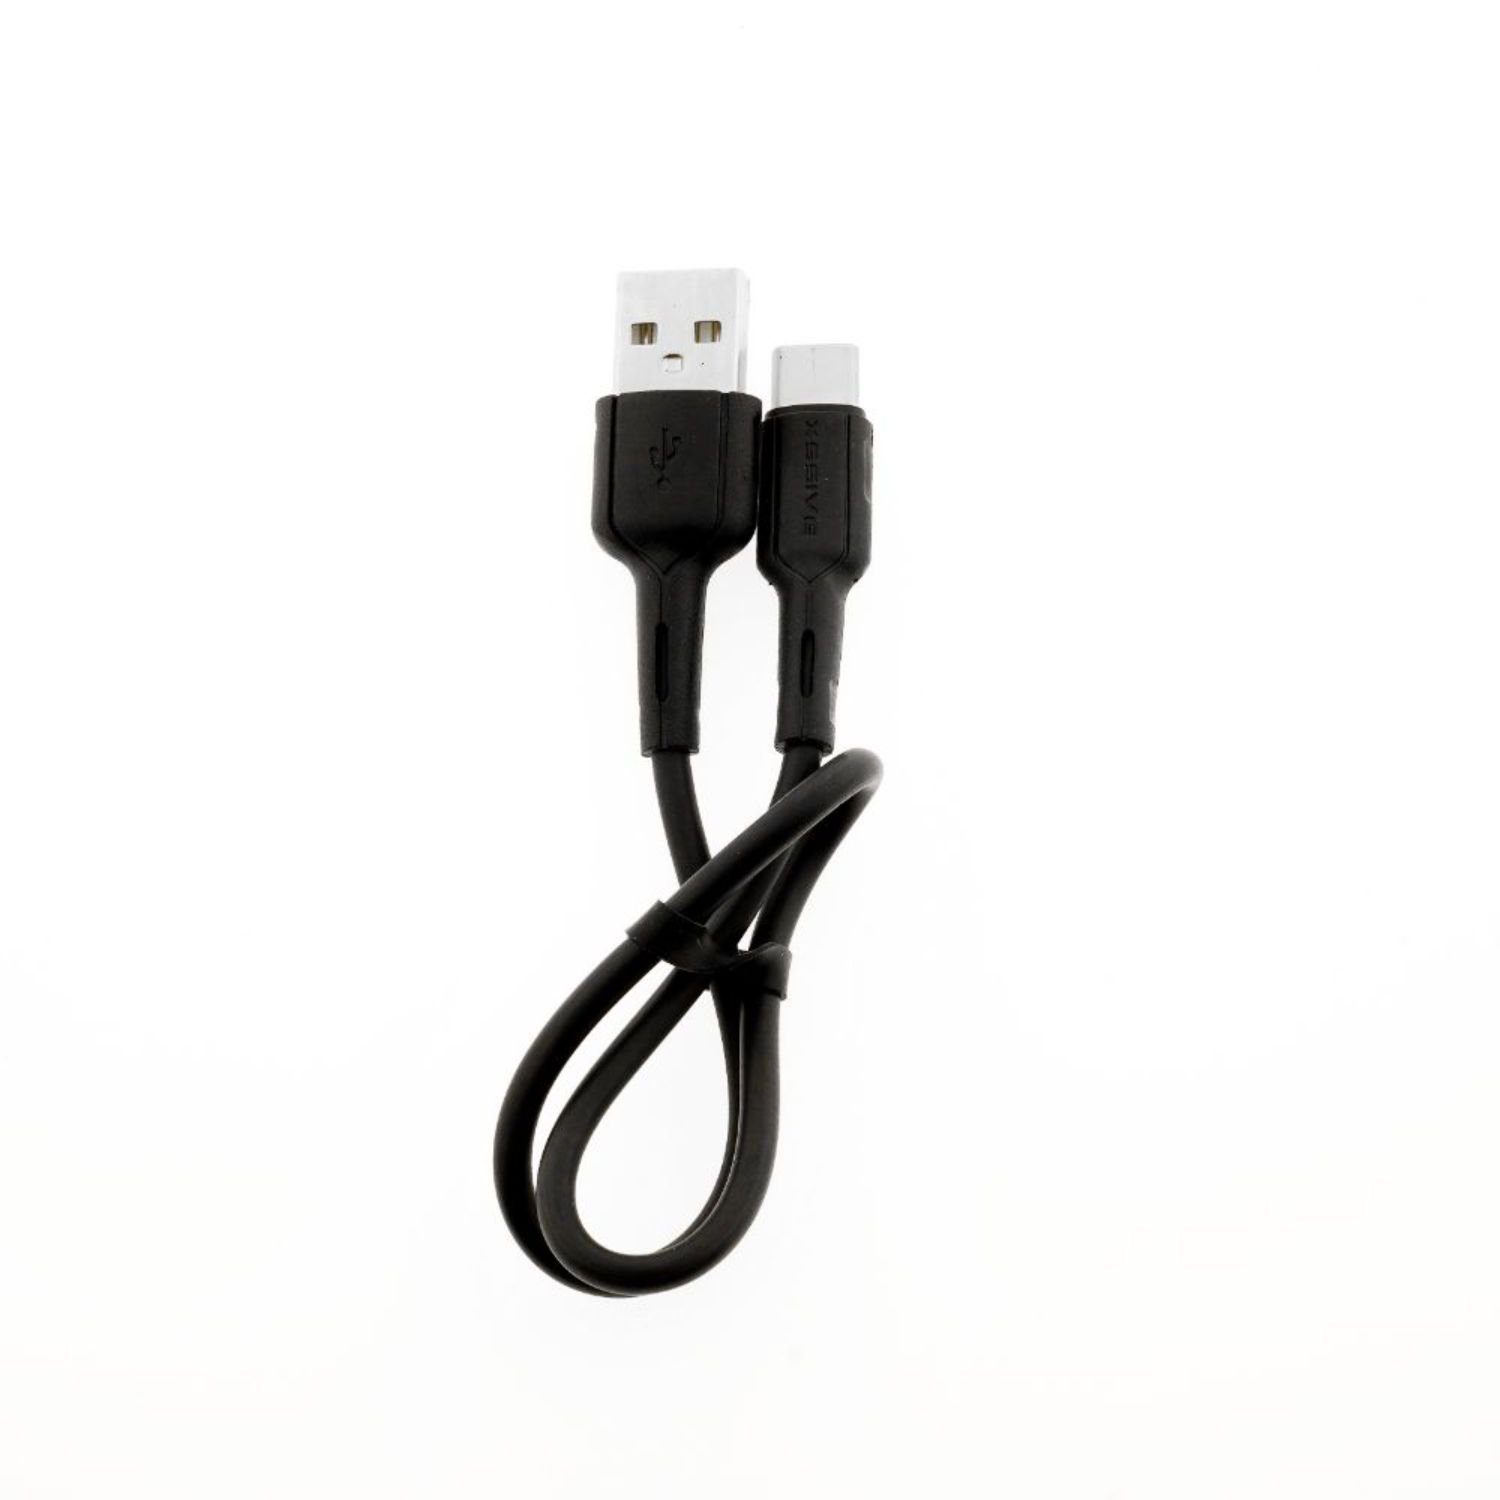 COFI 1453 Lade- Datenkabel 2.4A Output USB-C und 30cm USB zu Verlängerungskabel